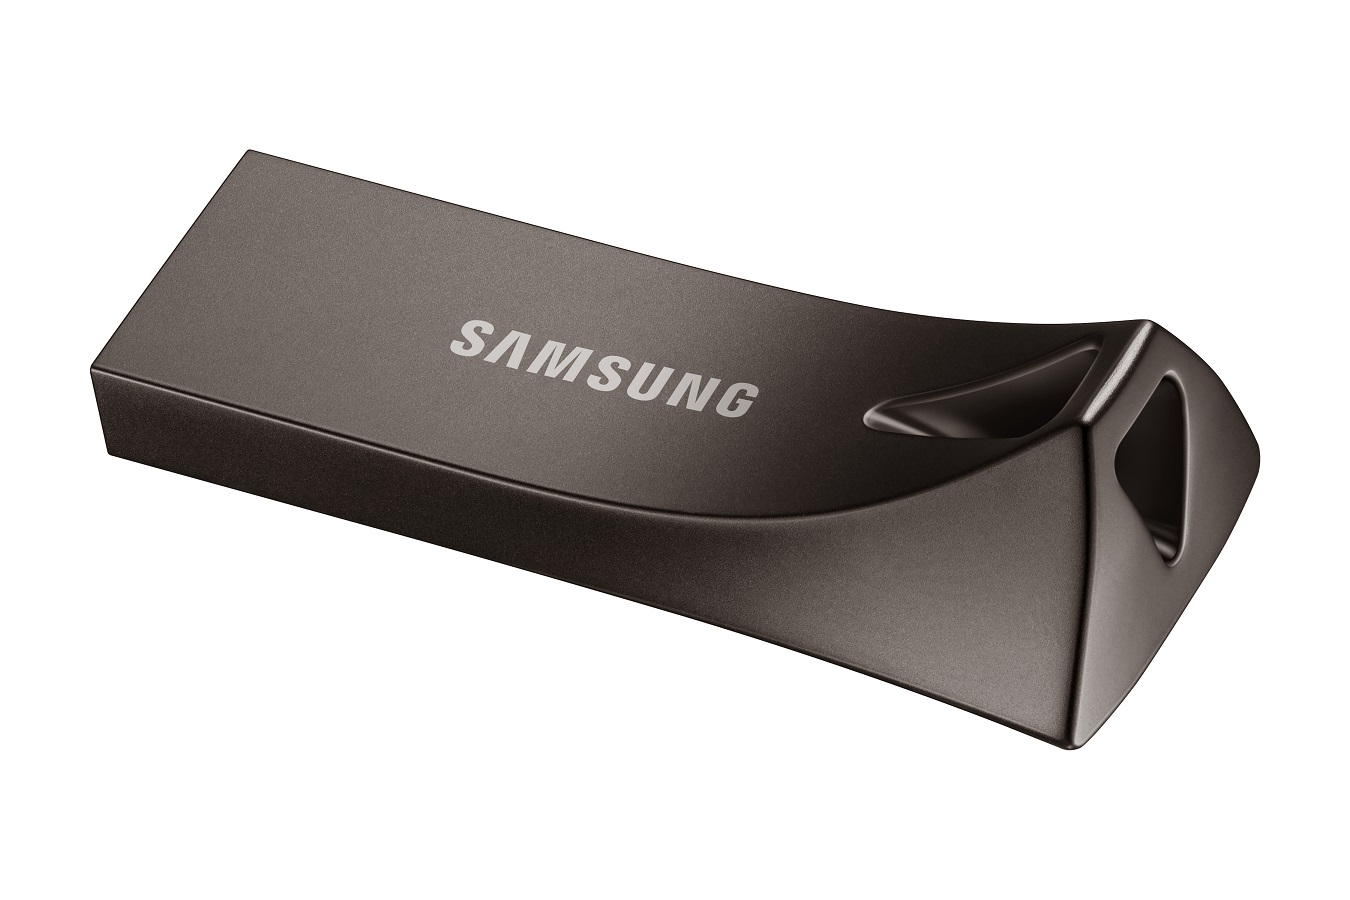 USB klíč Samsung BAR Plus, 512 GB, USB 3.2 Gen 1, šedý